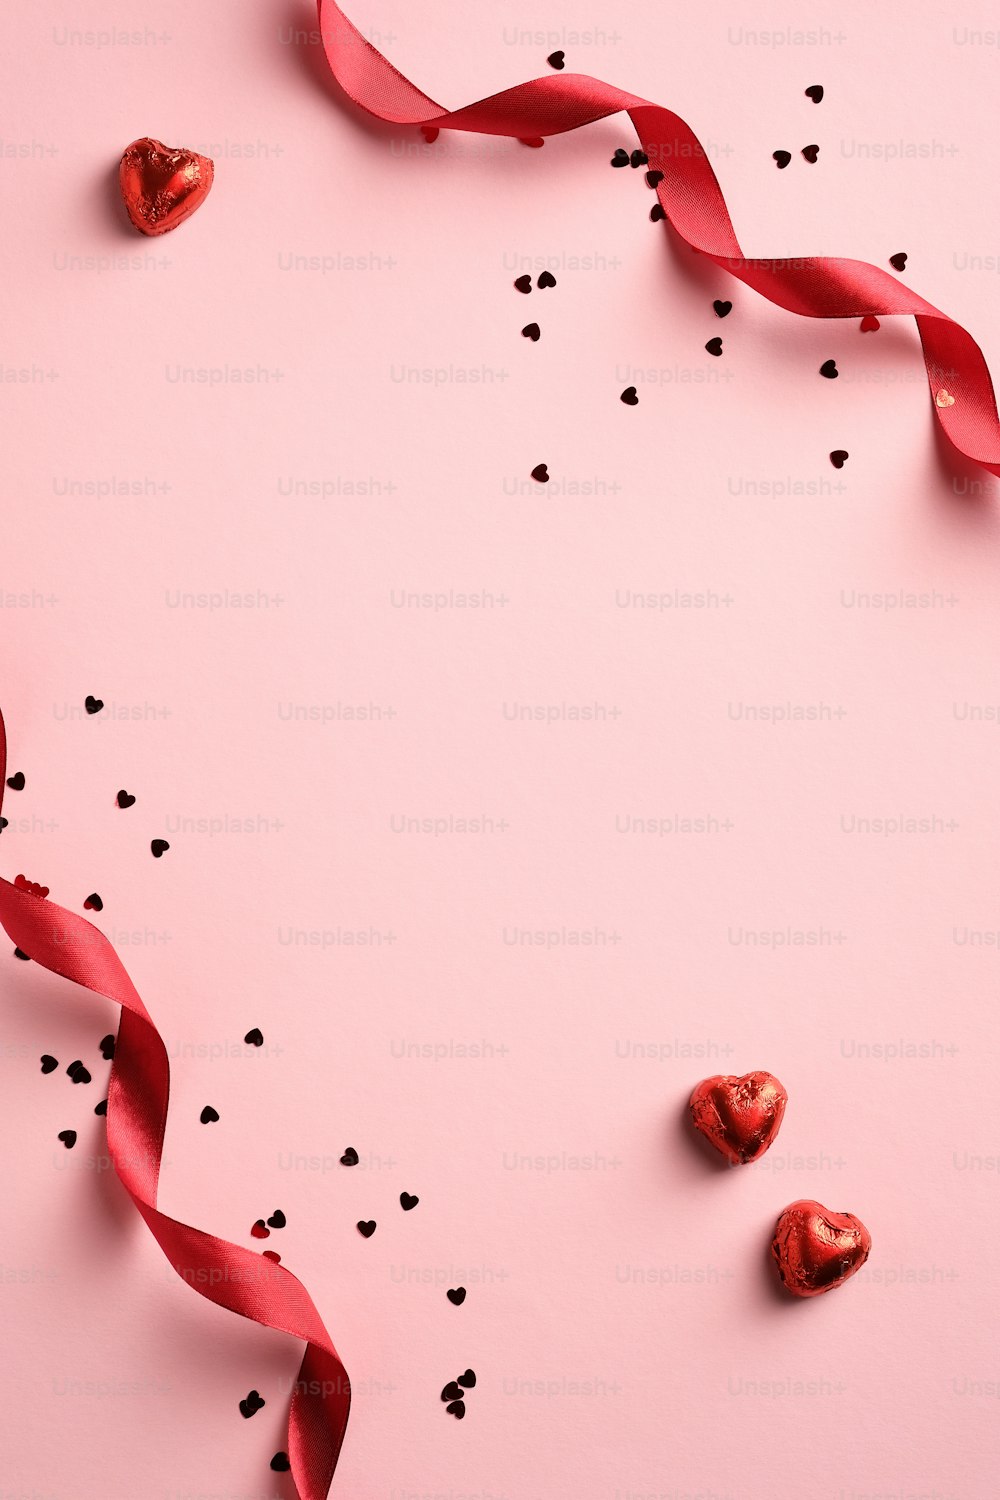 Elegante fondo del día de San Valentín con cinta roja, confeti, dulces en forma de corazón sobre fondo rosa. Estilo minimalista. Plano tendido.